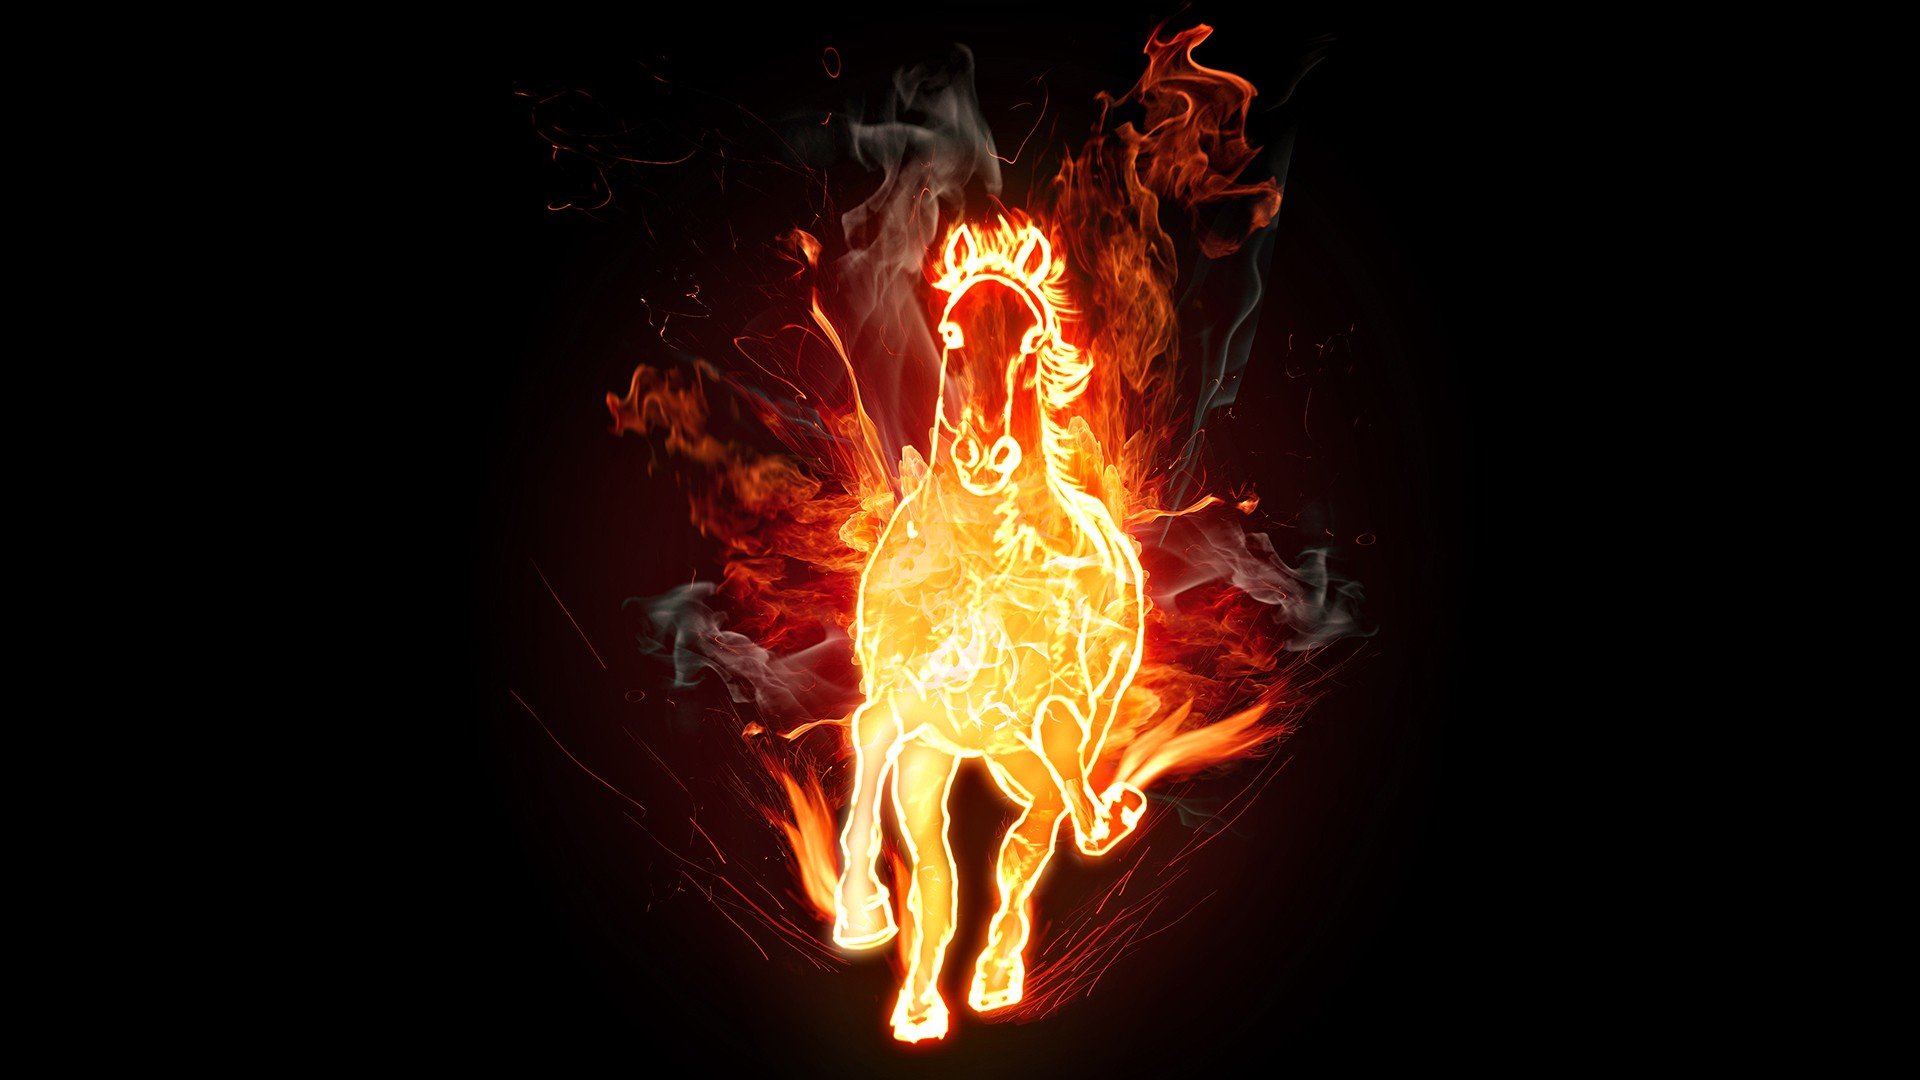 dark, Fire, Horses, Digital, Art, Artwork Wallpapers HD / Desktop and Mobil...